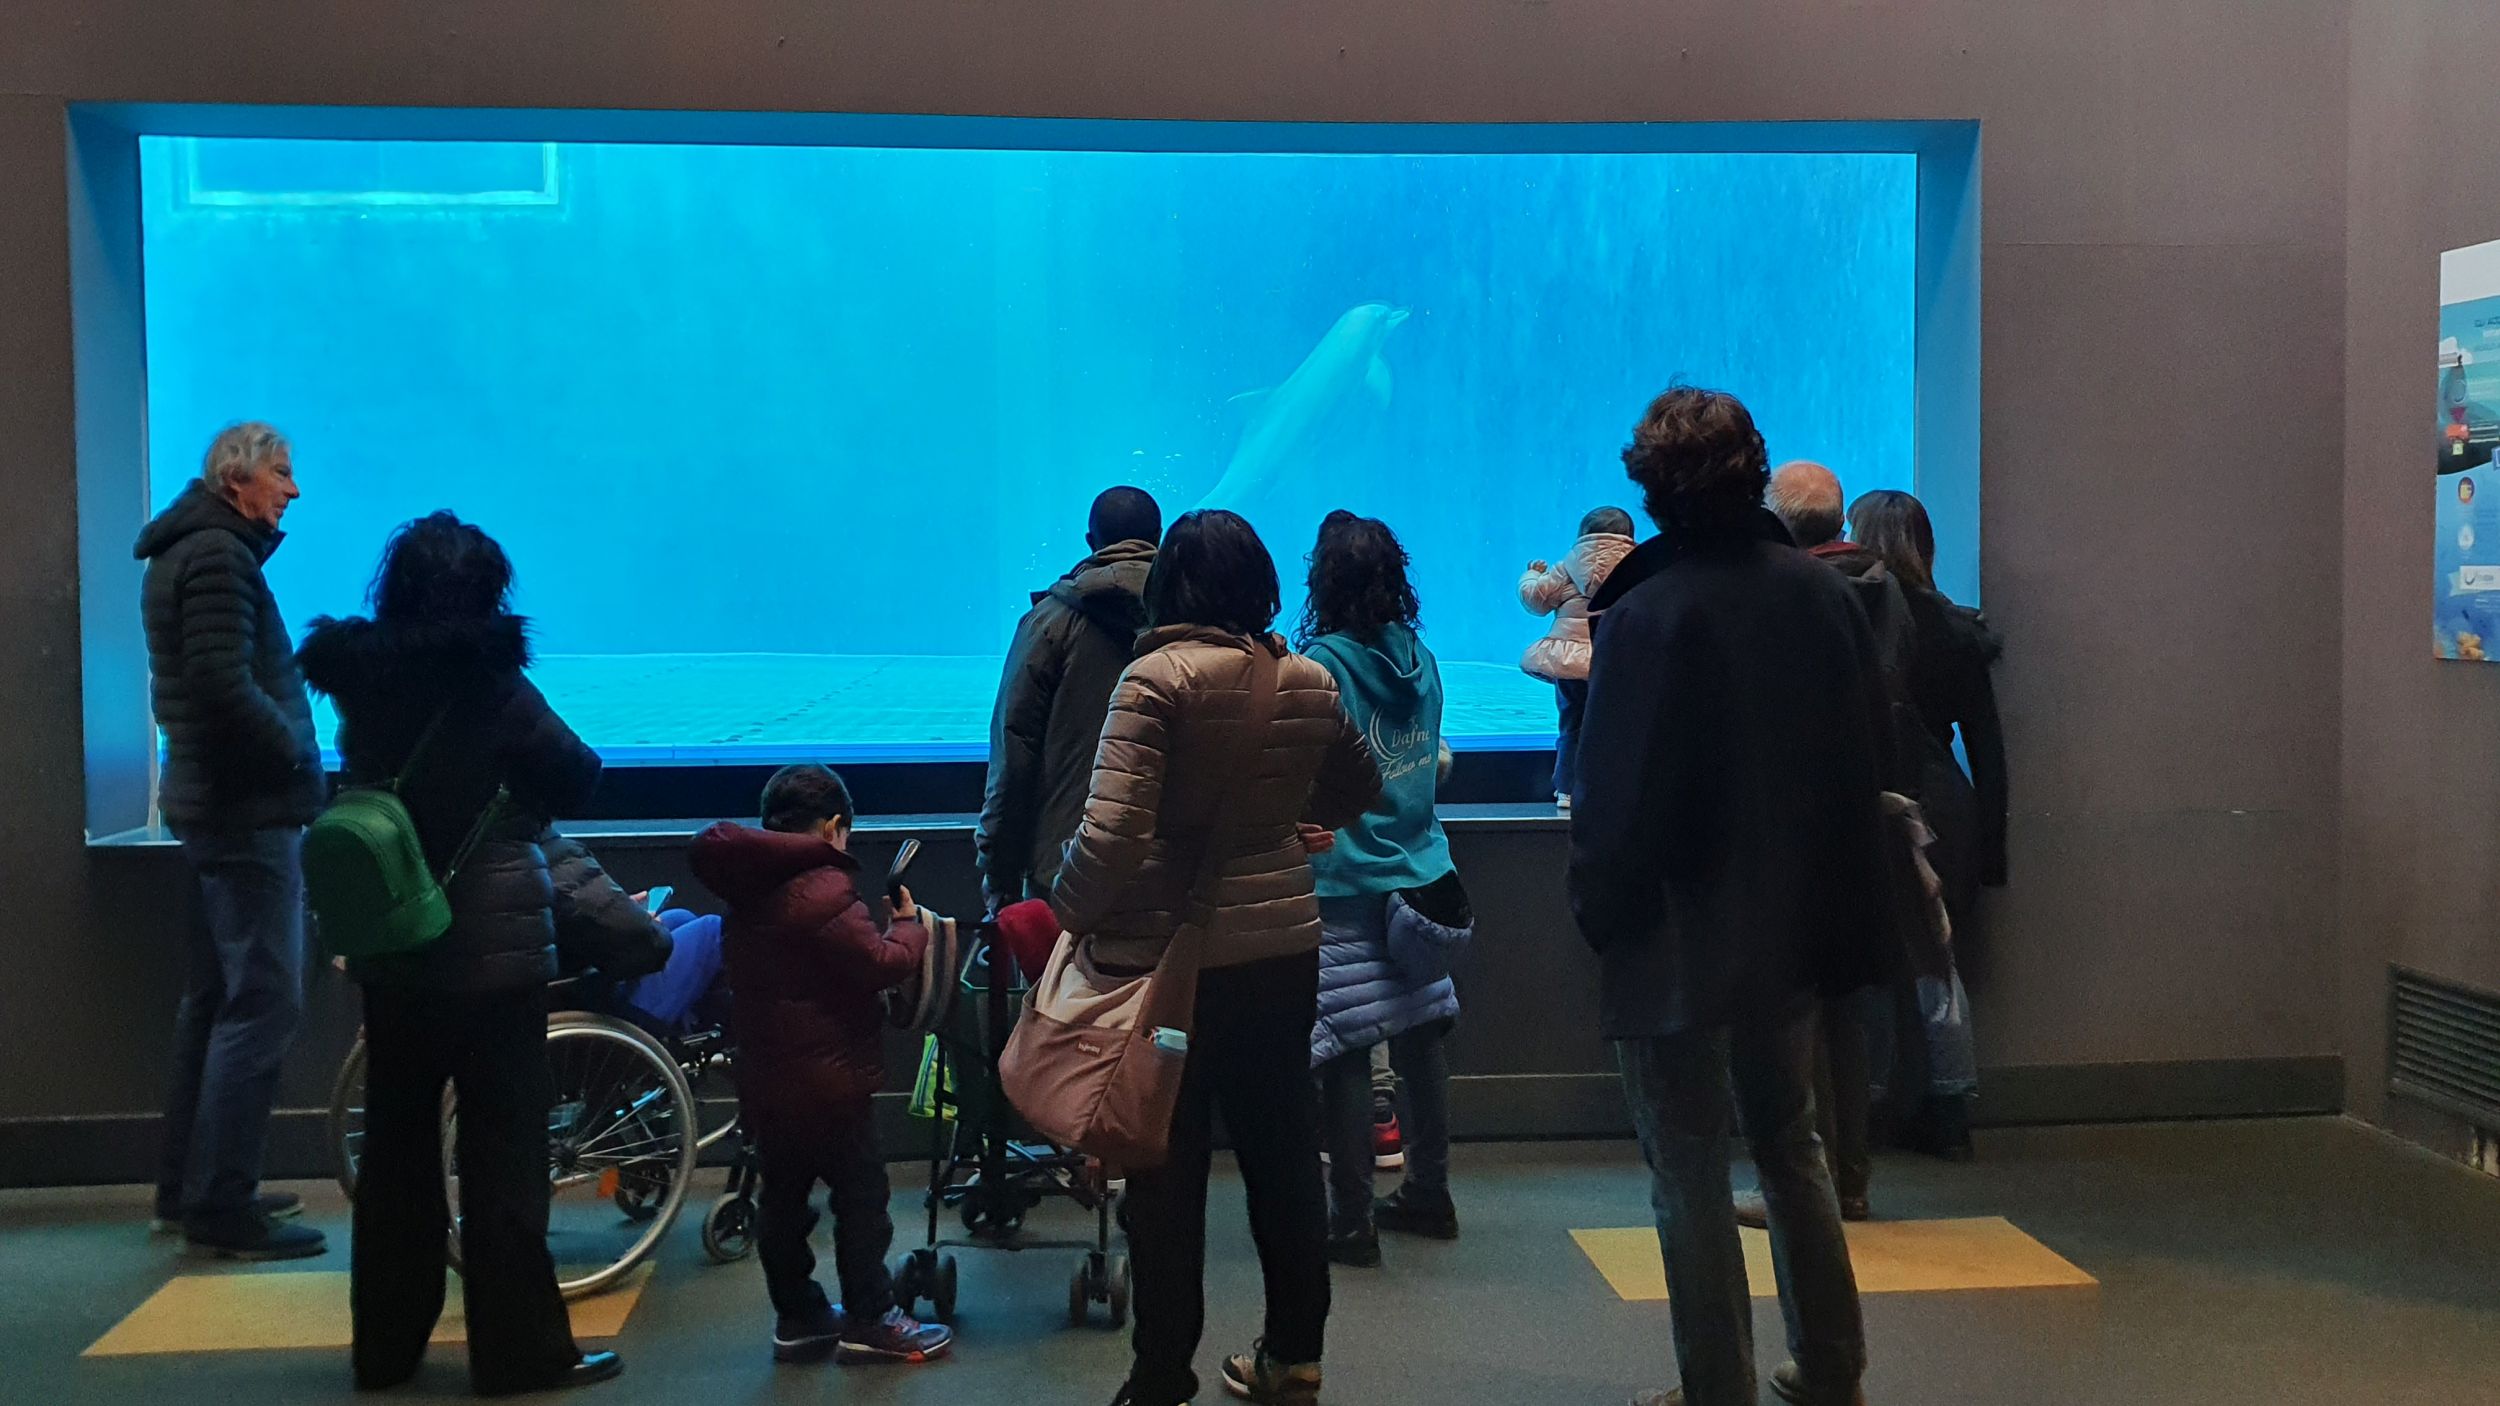 Gaslini e acquario di genova - nella foto delle persone stanno guardando una vasca dell'acquario con dentro creature marine. Tra loro ci sono anche dei bambini in sedia a rotelle